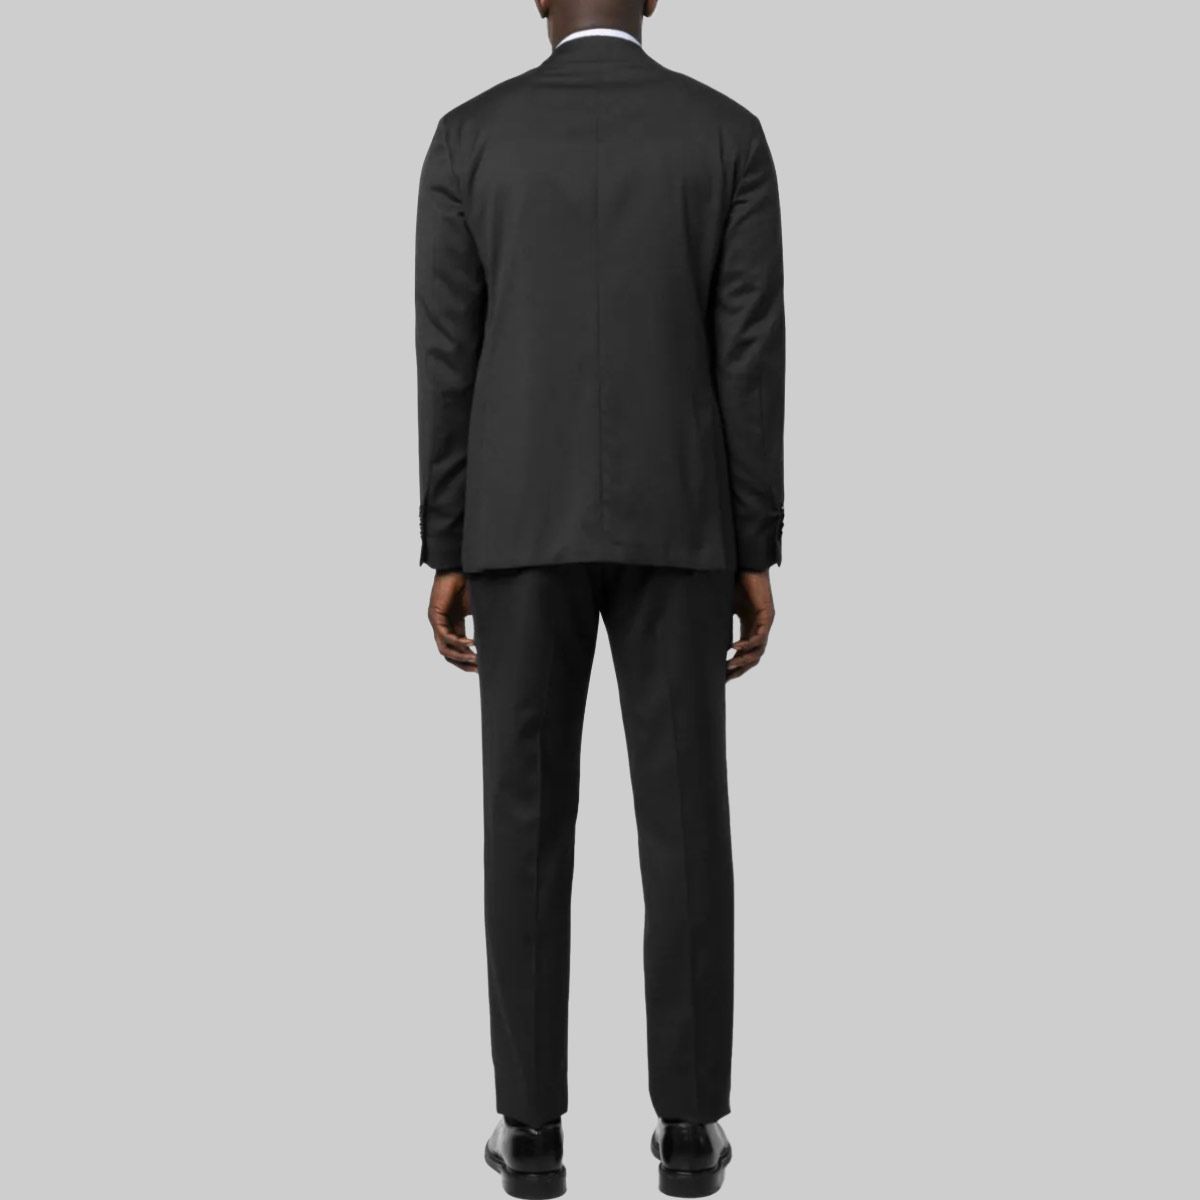 Two-Piece Suit Black